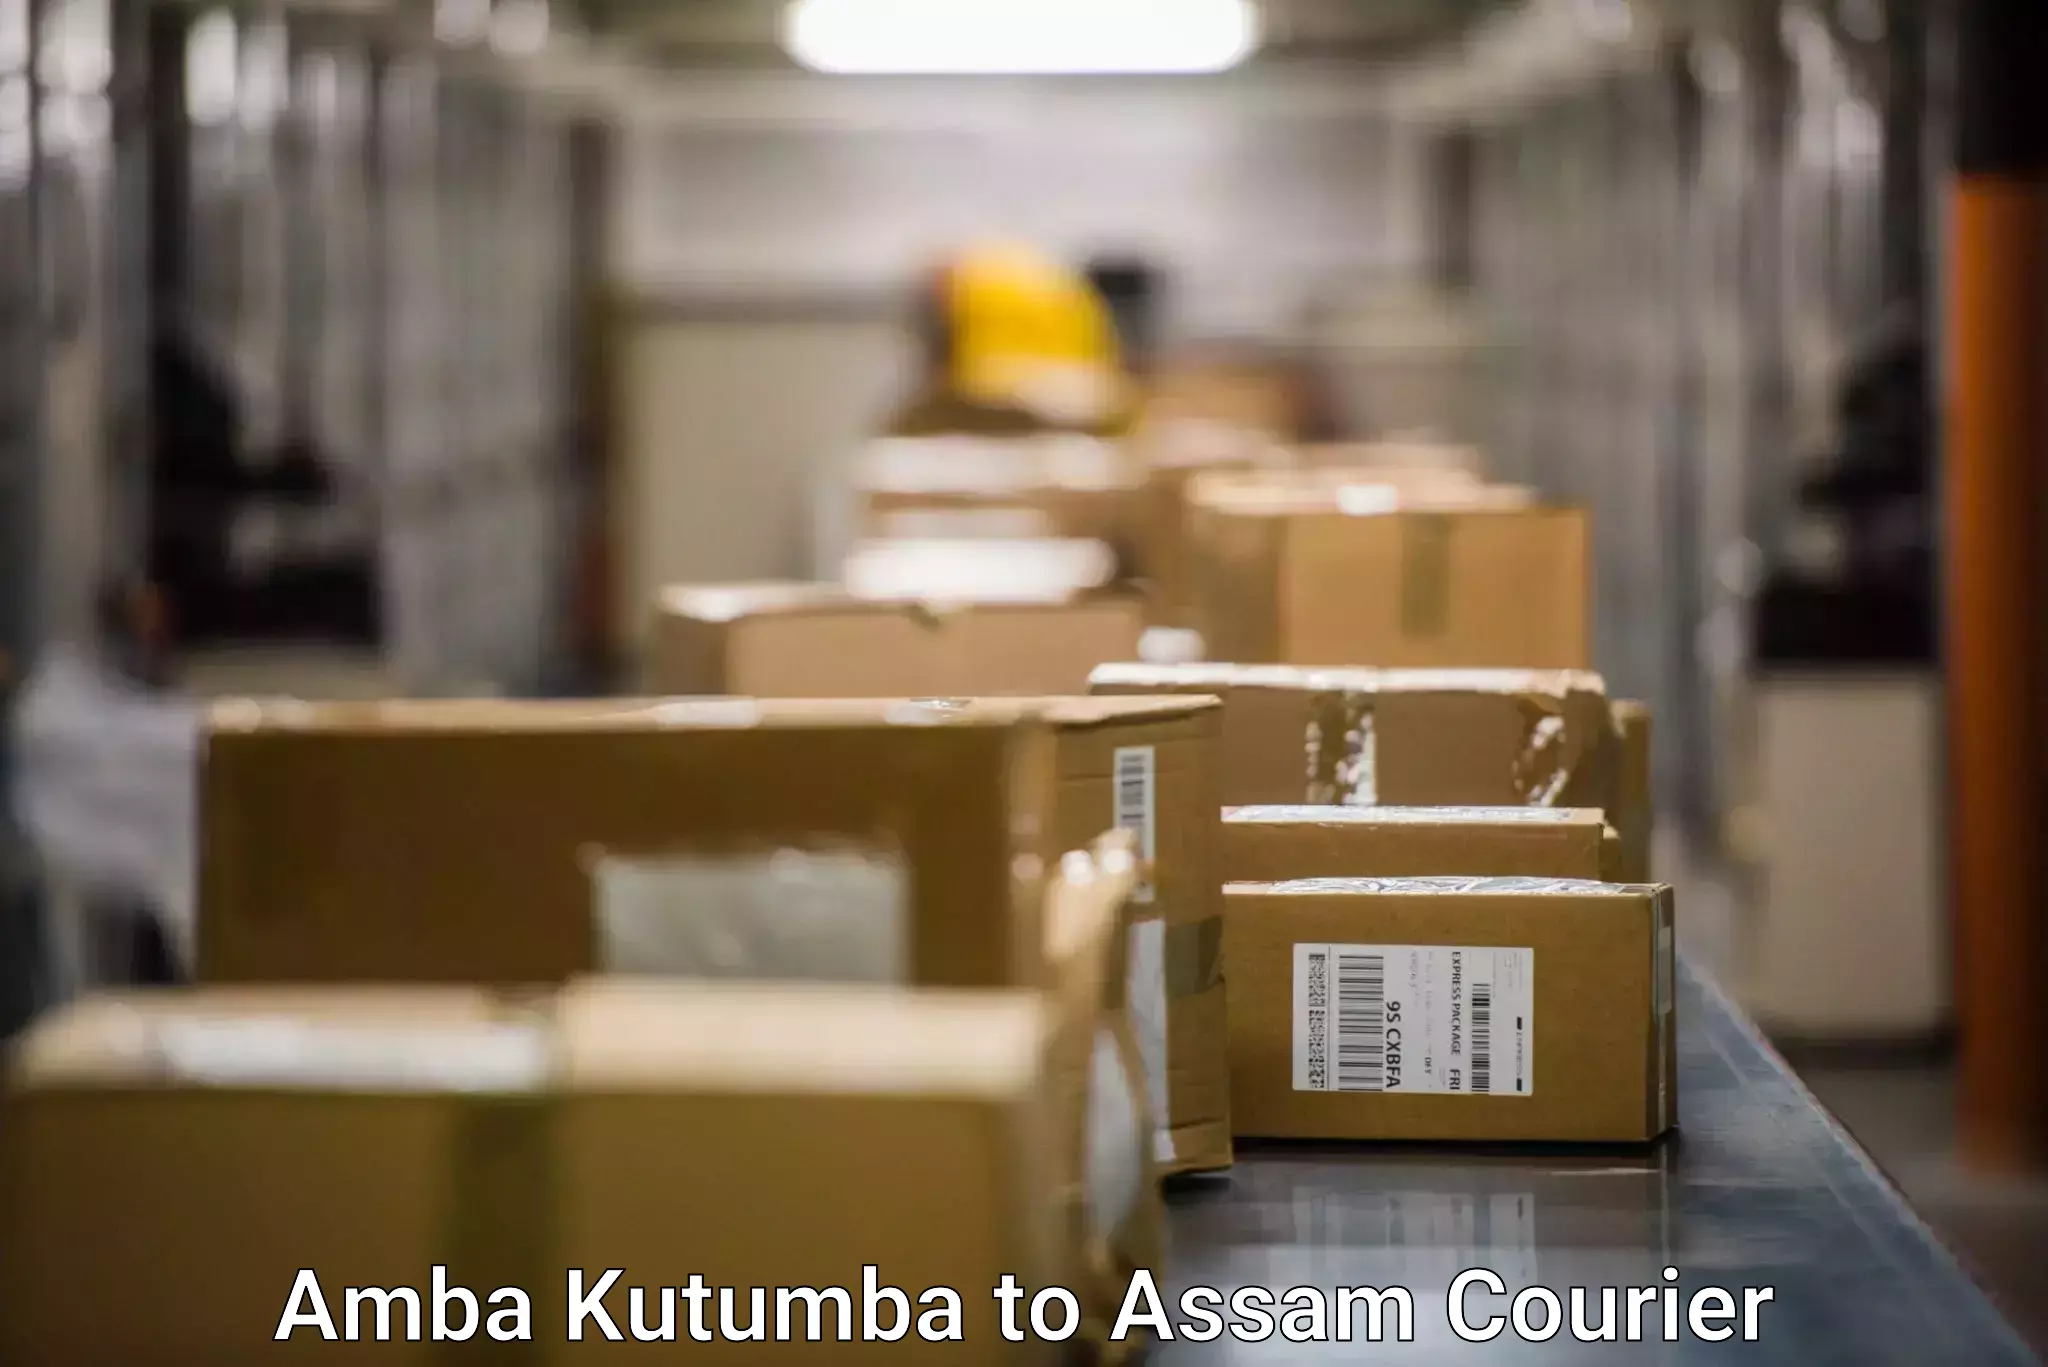 Modern courier technology Amba Kutumba to Balapara